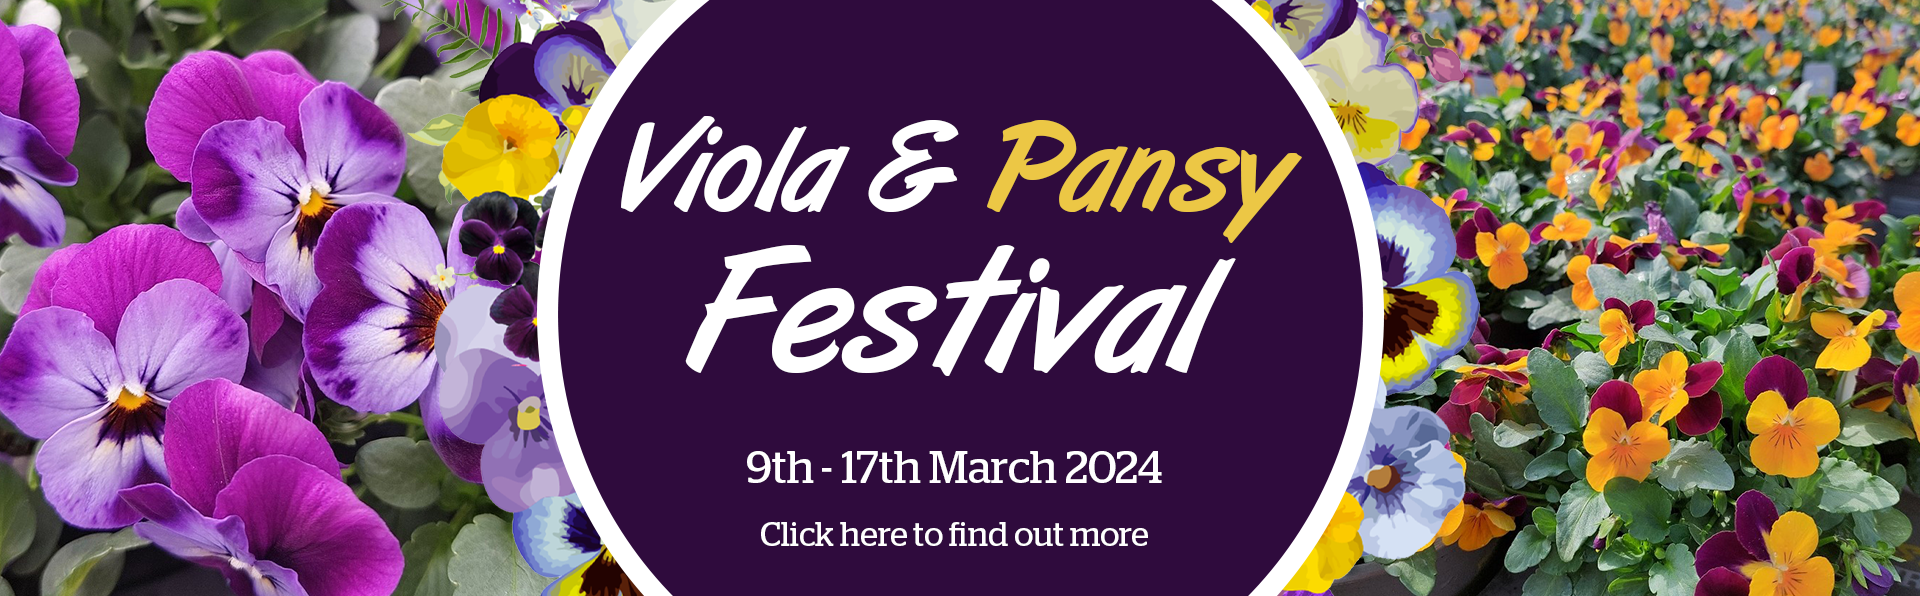 Viola & Pansy Festival